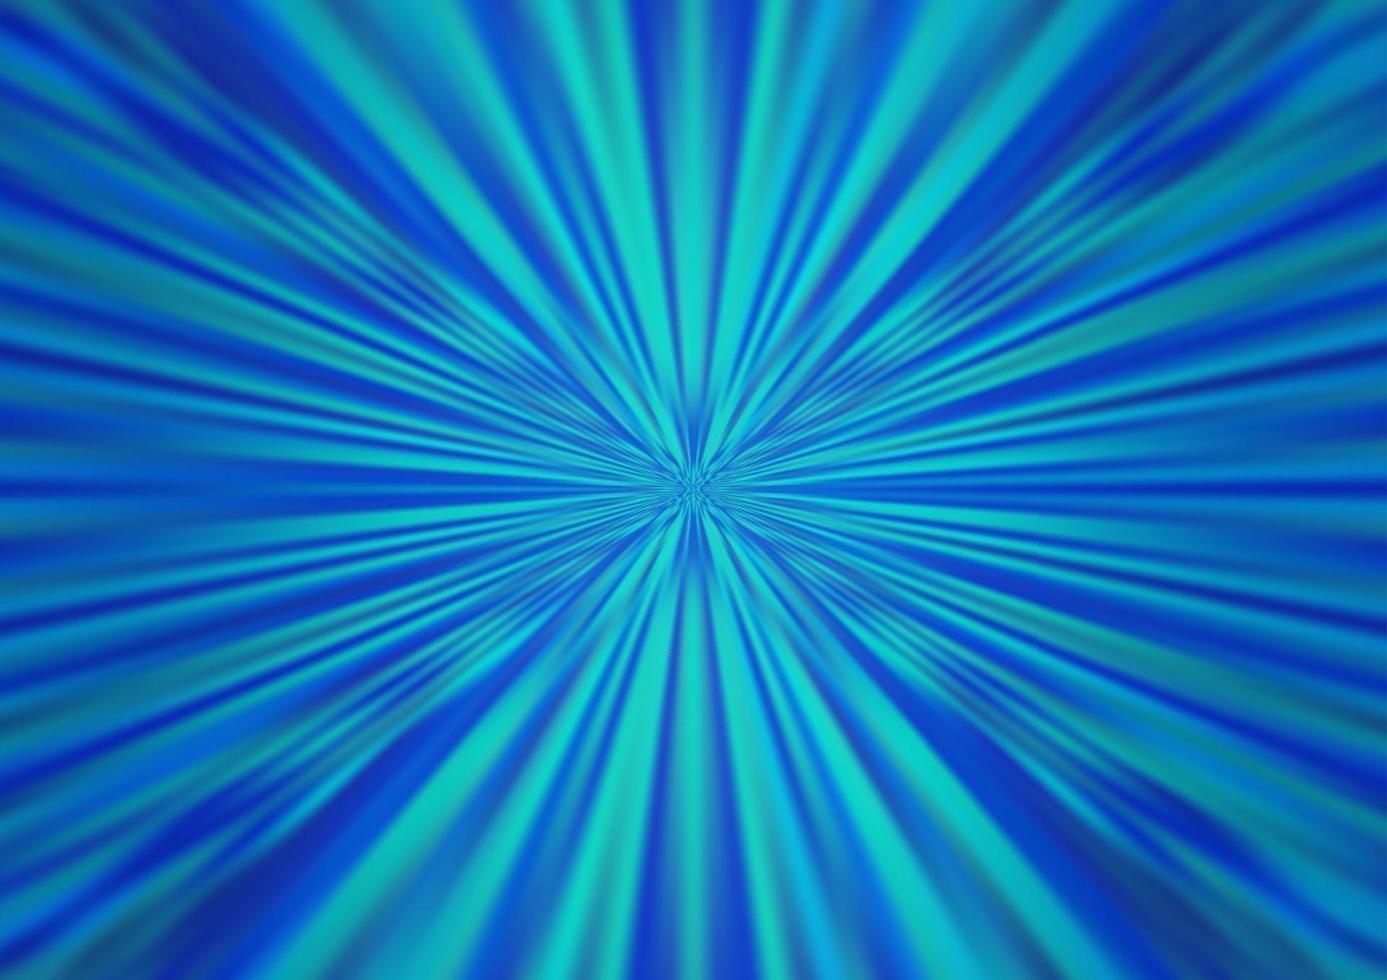 hellblauer Vektor glänzend abstrakten Hintergrund.